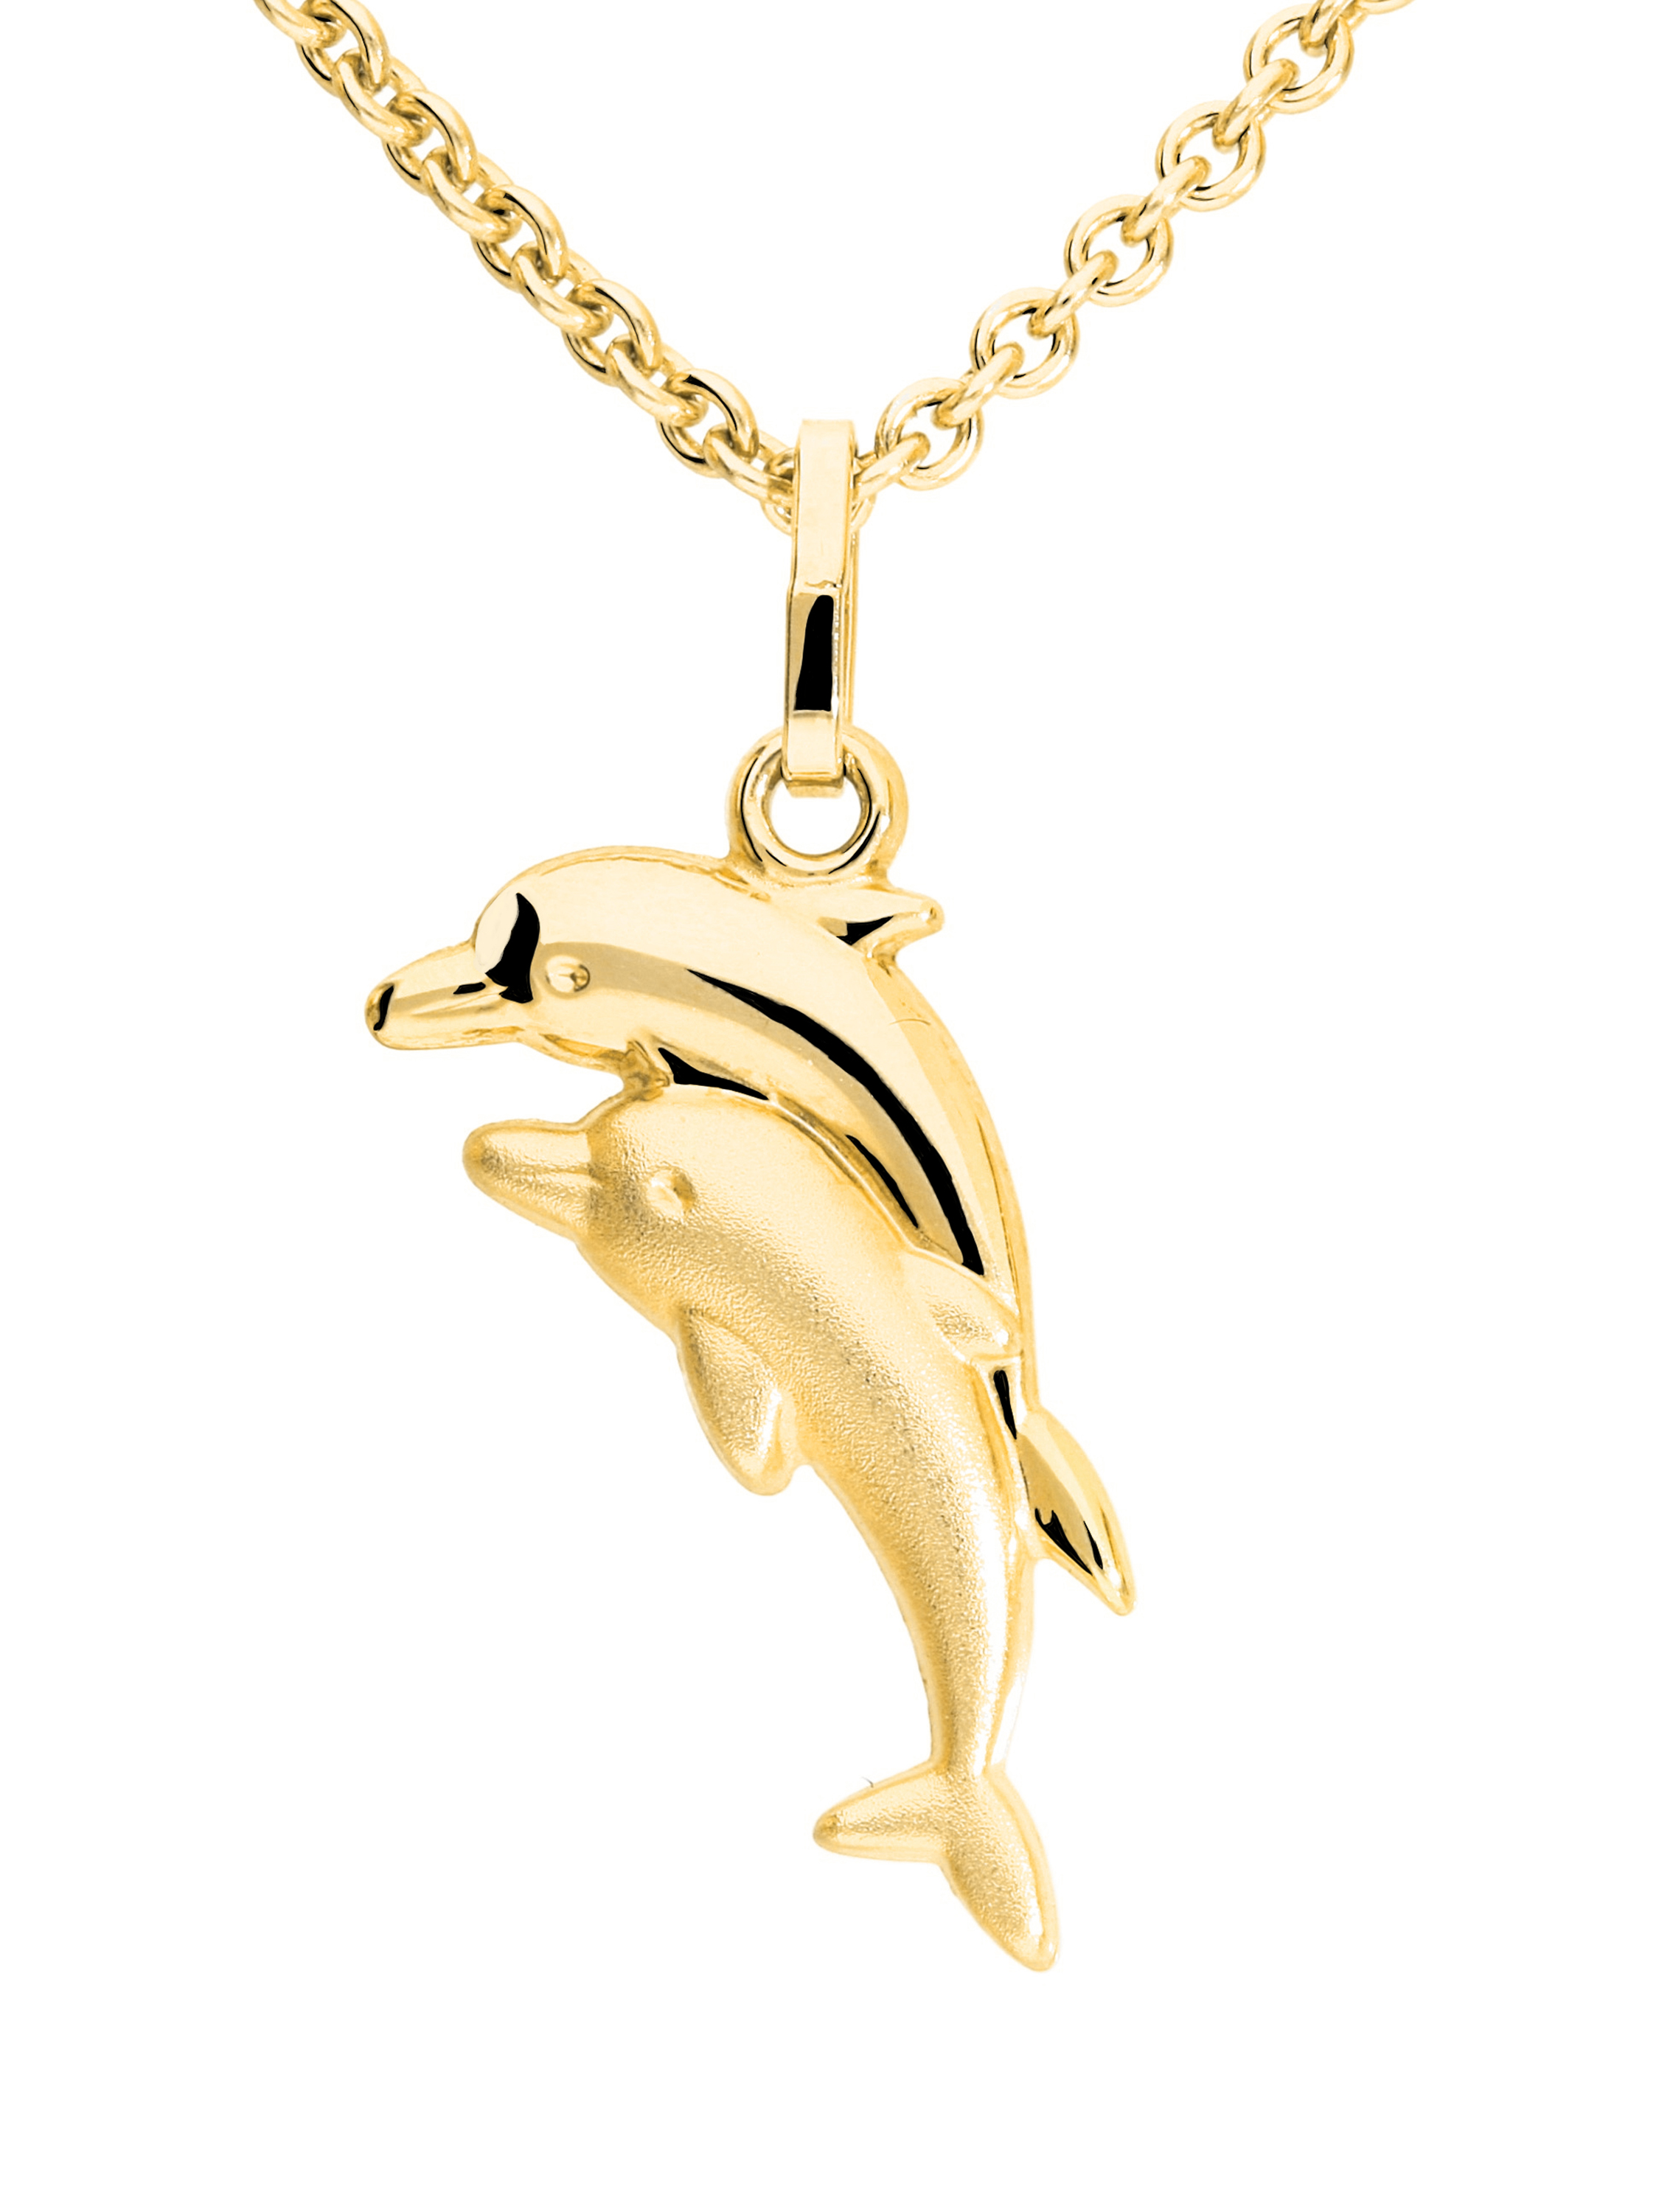 Ohrringe mit Delfin Motiv in echtem 333er Gold kaufen - Dolphin Twins